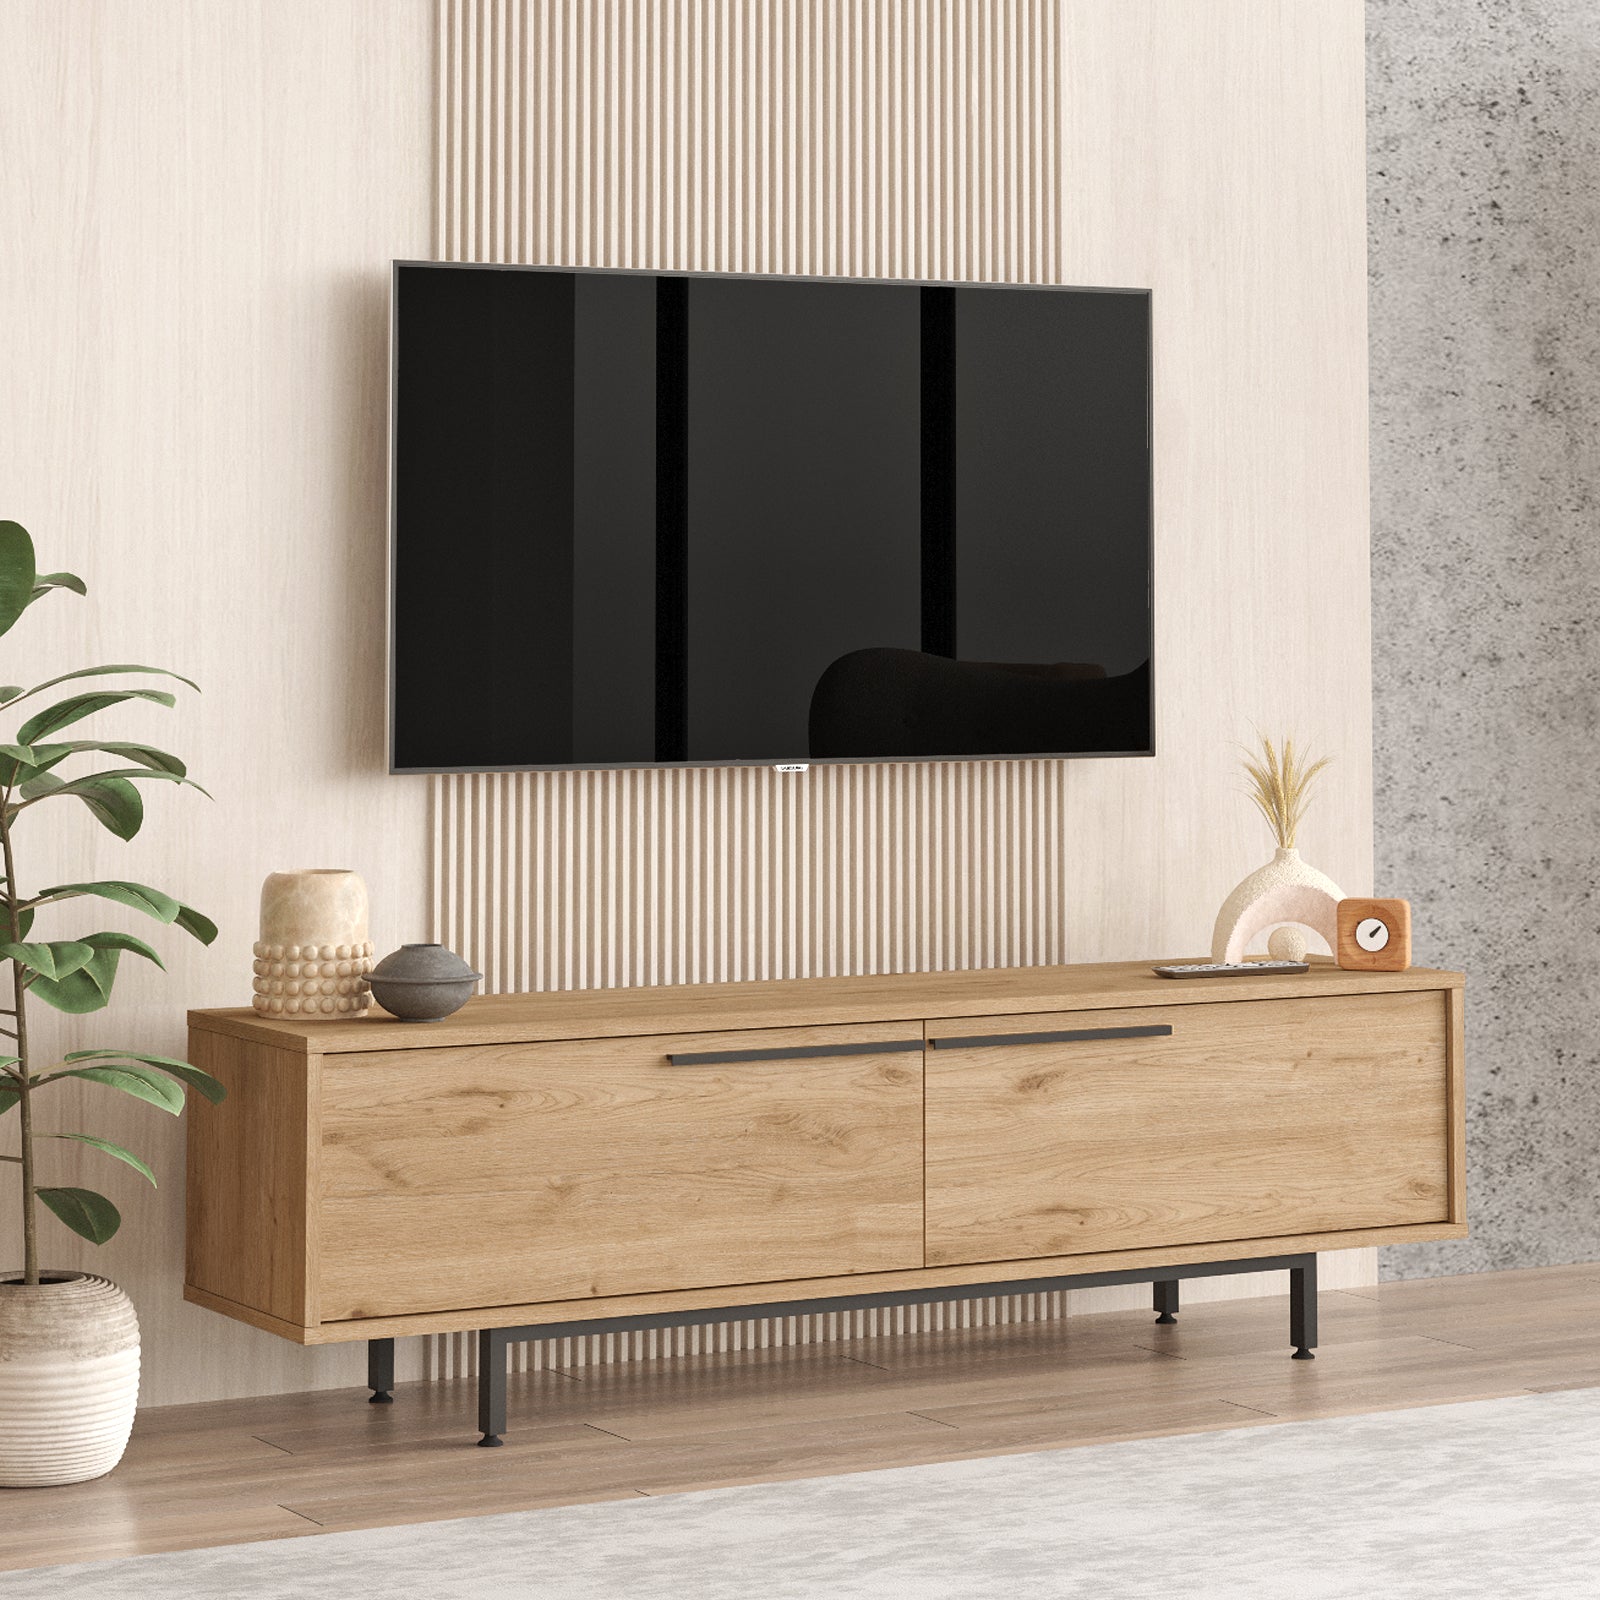 Bois clair-Meuble TV 'AURORA' en bois avec pieds en acier dans un salon contemporain.